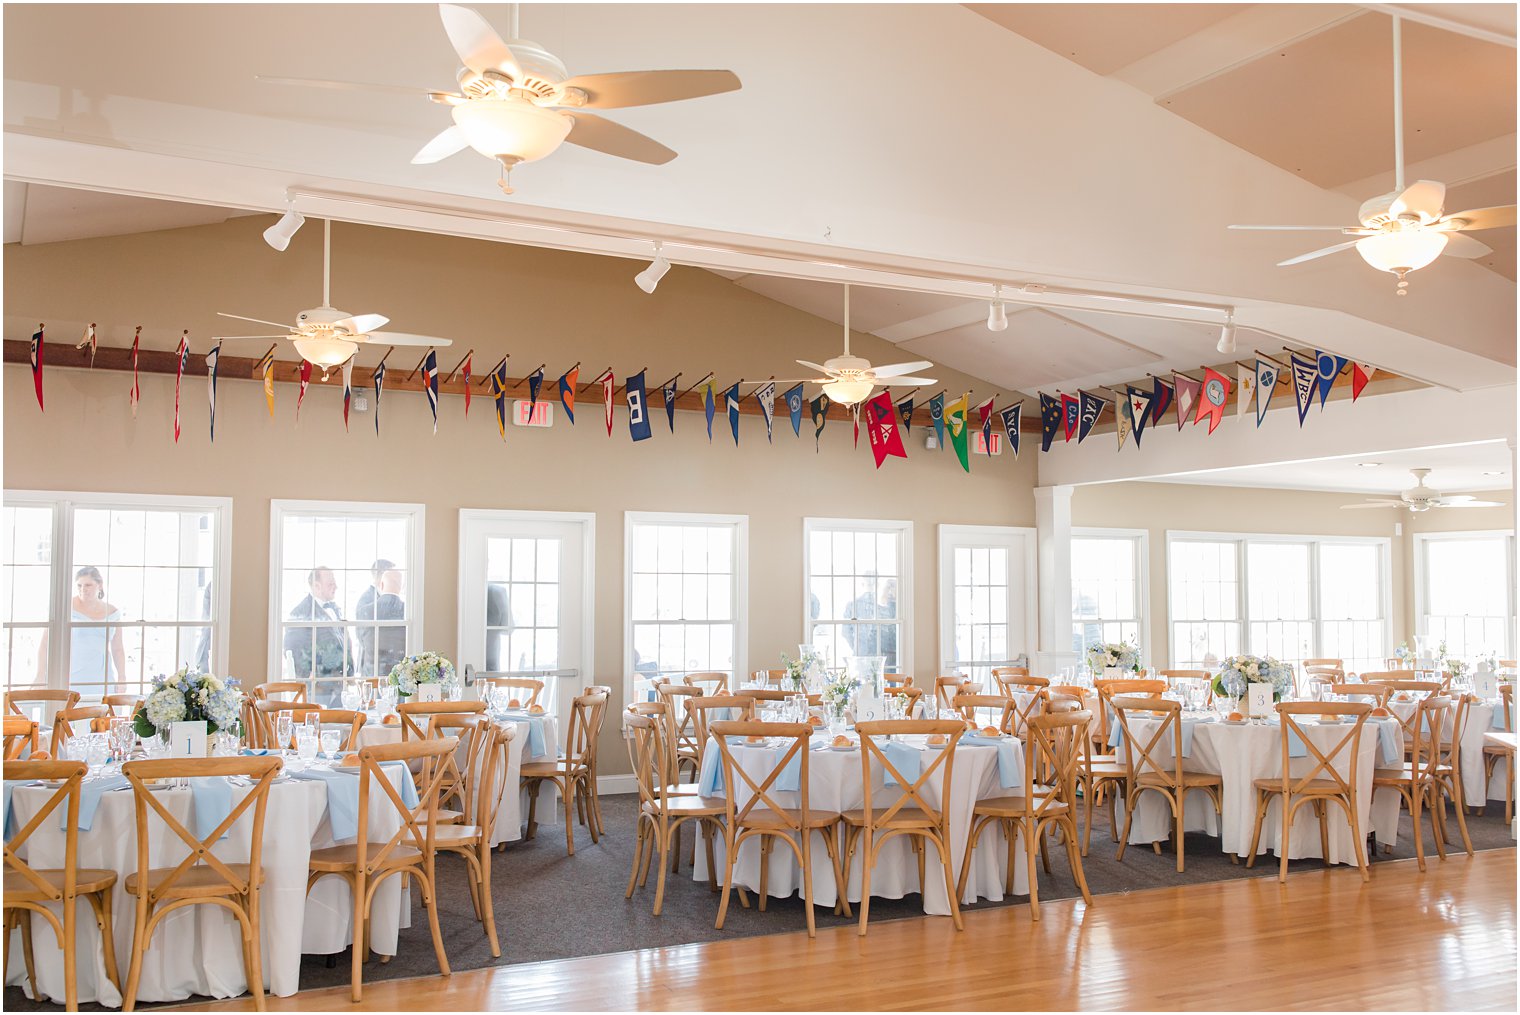 Brant Beach Yacht Club wedding reception details 